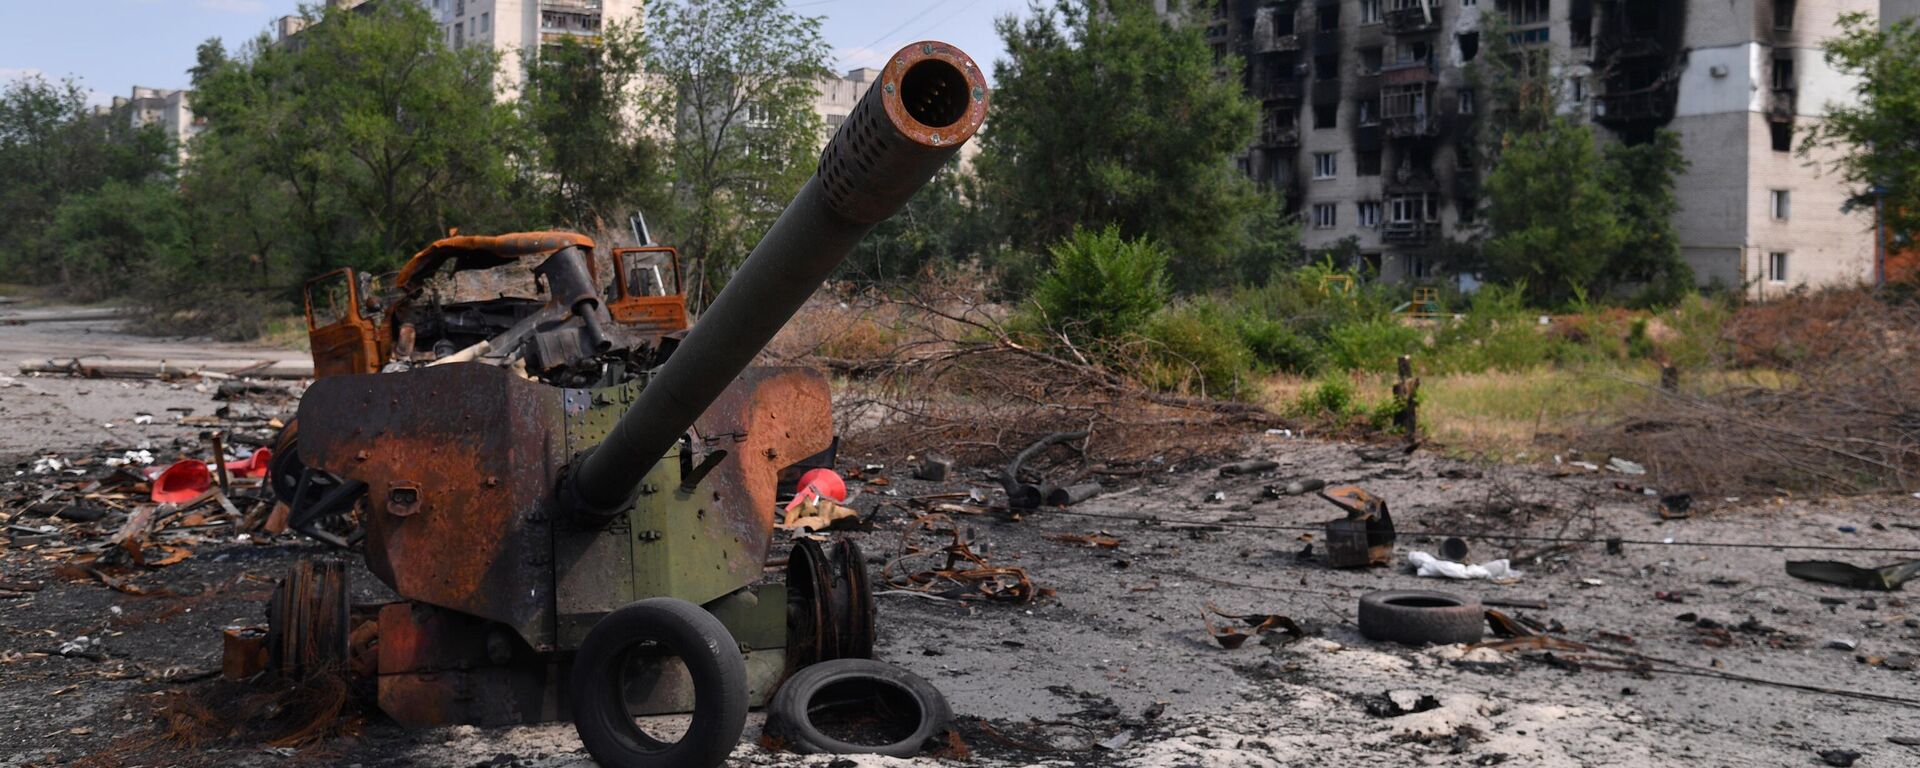 Arma de artilharia das Forças Armadas da Ucrânia destruída em Severodonetsk, no leste ucraniano, 11 de junho de 2022 - Sputnik Brasil, 1920, 20.07.2022